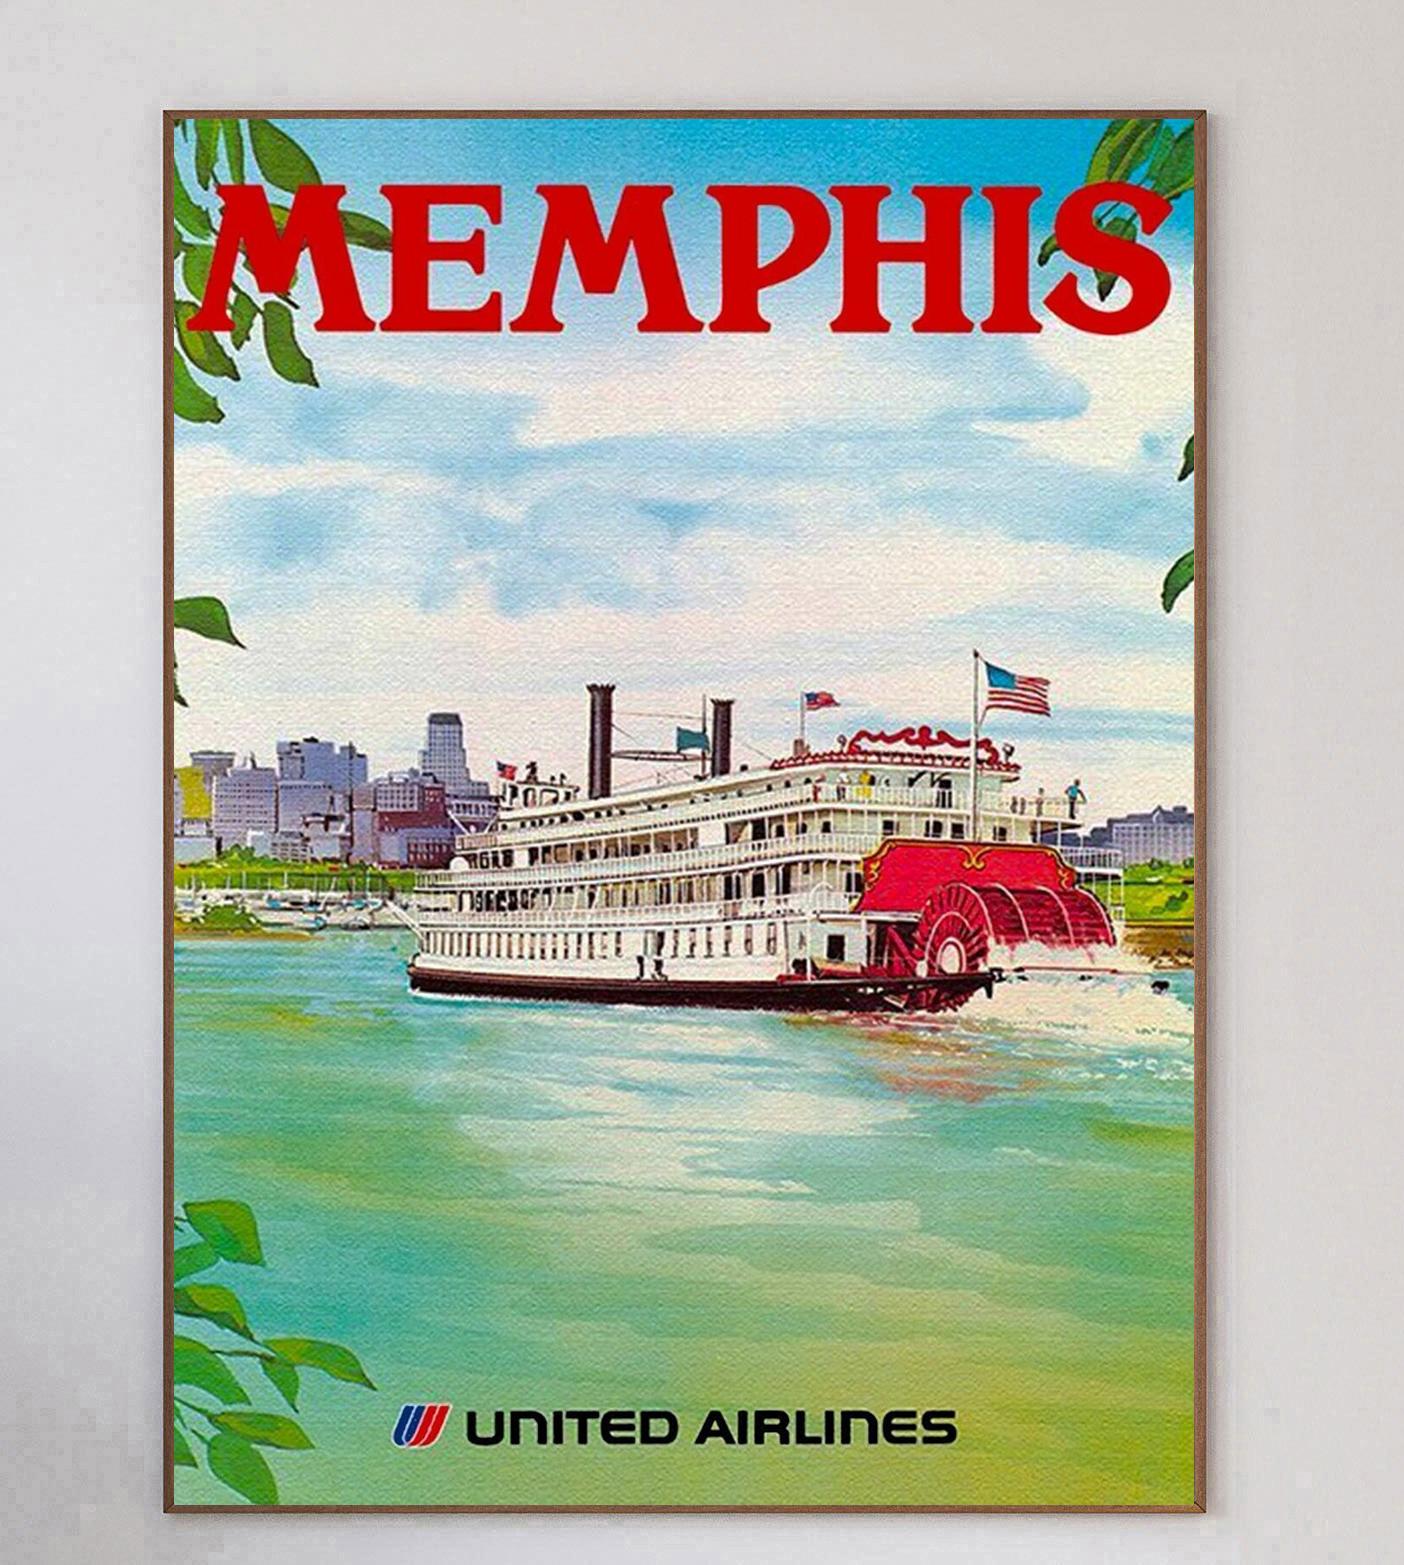 Mit Kunstwerken der Künstler †R. Meyer und Hagel wirbt dieses schöne und seltene Plakat für die Routen der United Airlines nach Memphis. Dieses großartige Design, das ein Paddelboot darstellt, das an einem sonnigen Tag den mächtigen Mississippi